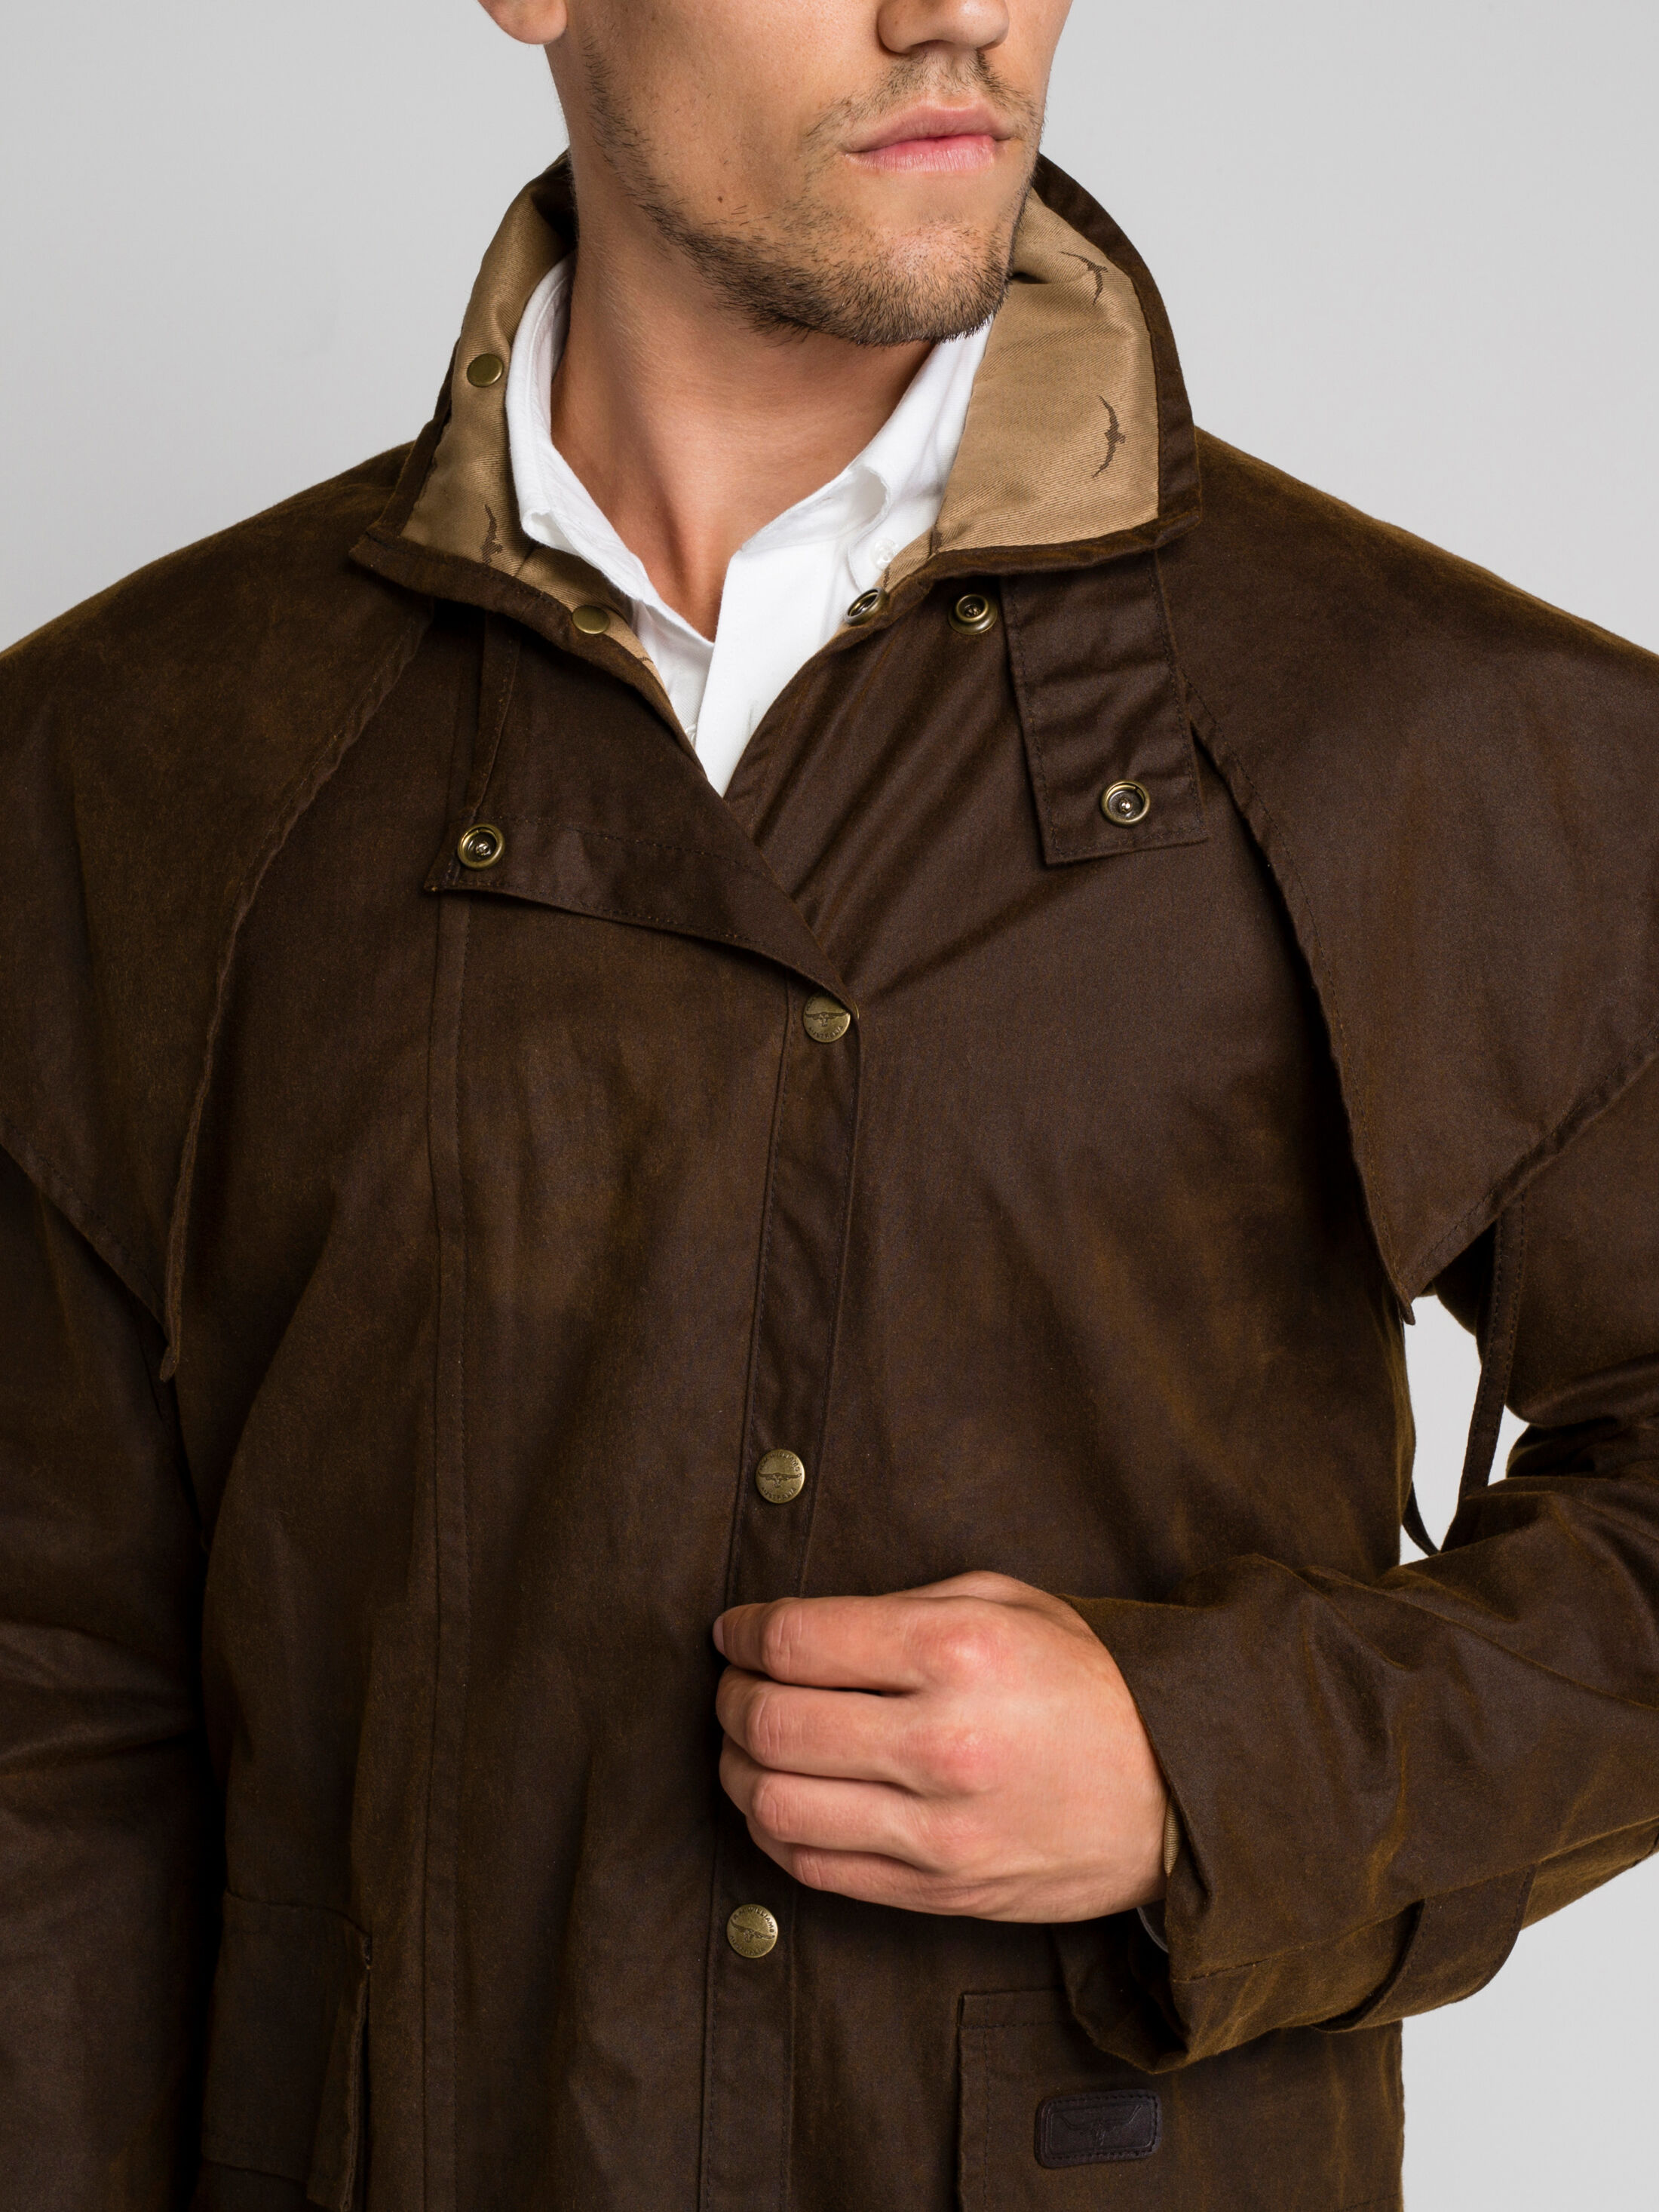 Droughtbreaker Coat - Men's Jackets at 